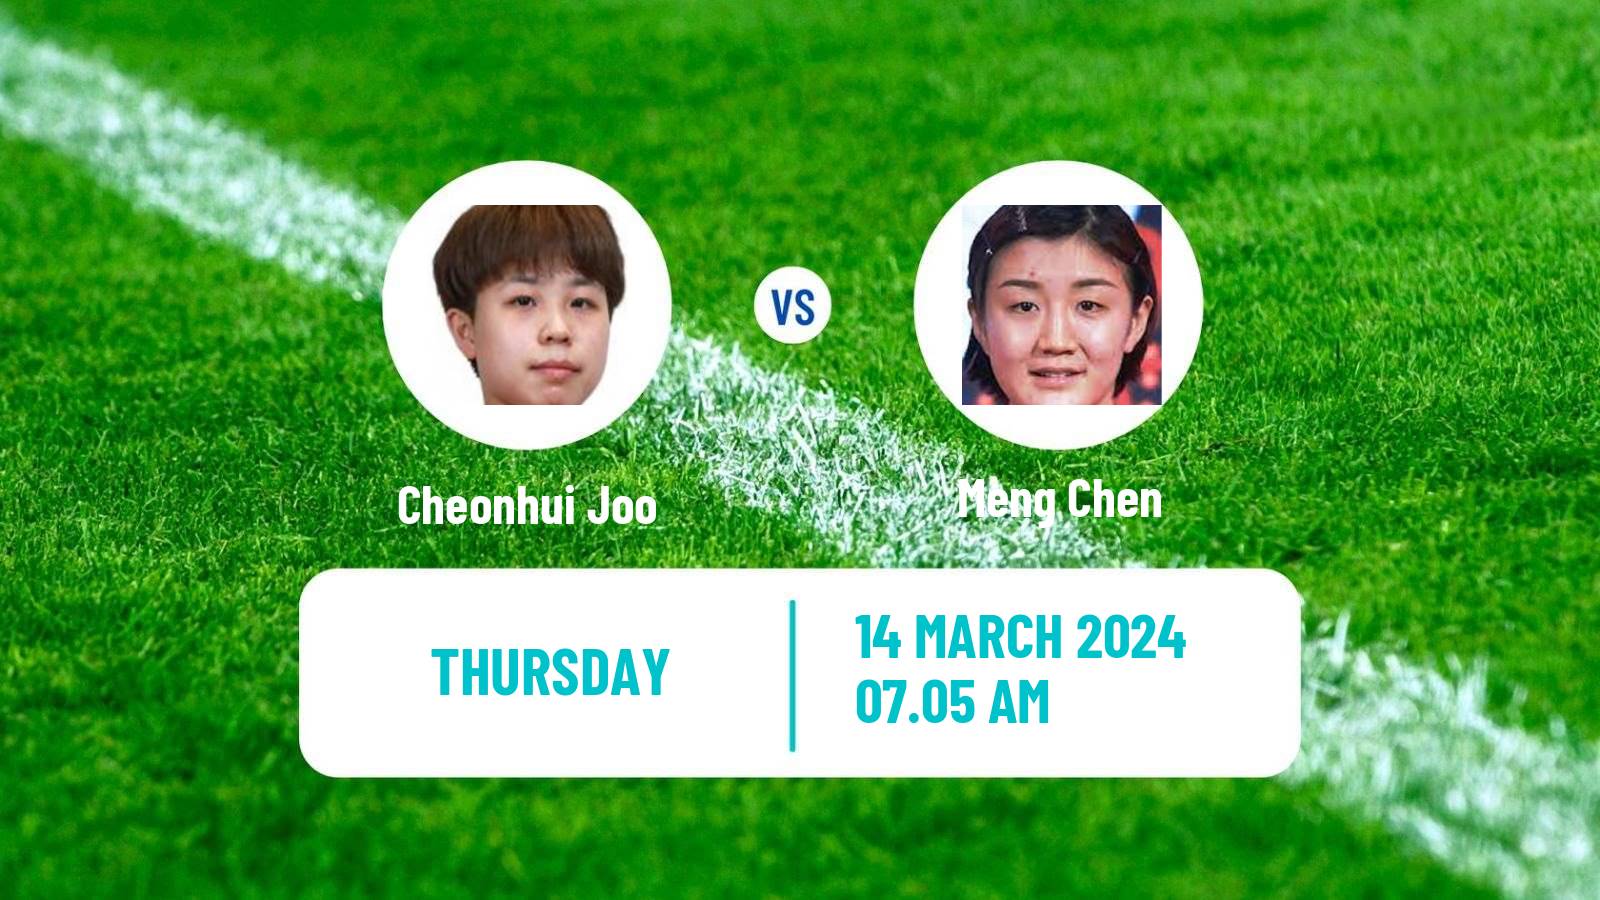 Table tennis Singapore Smash Women Cheonhui Joo - Meng Chen